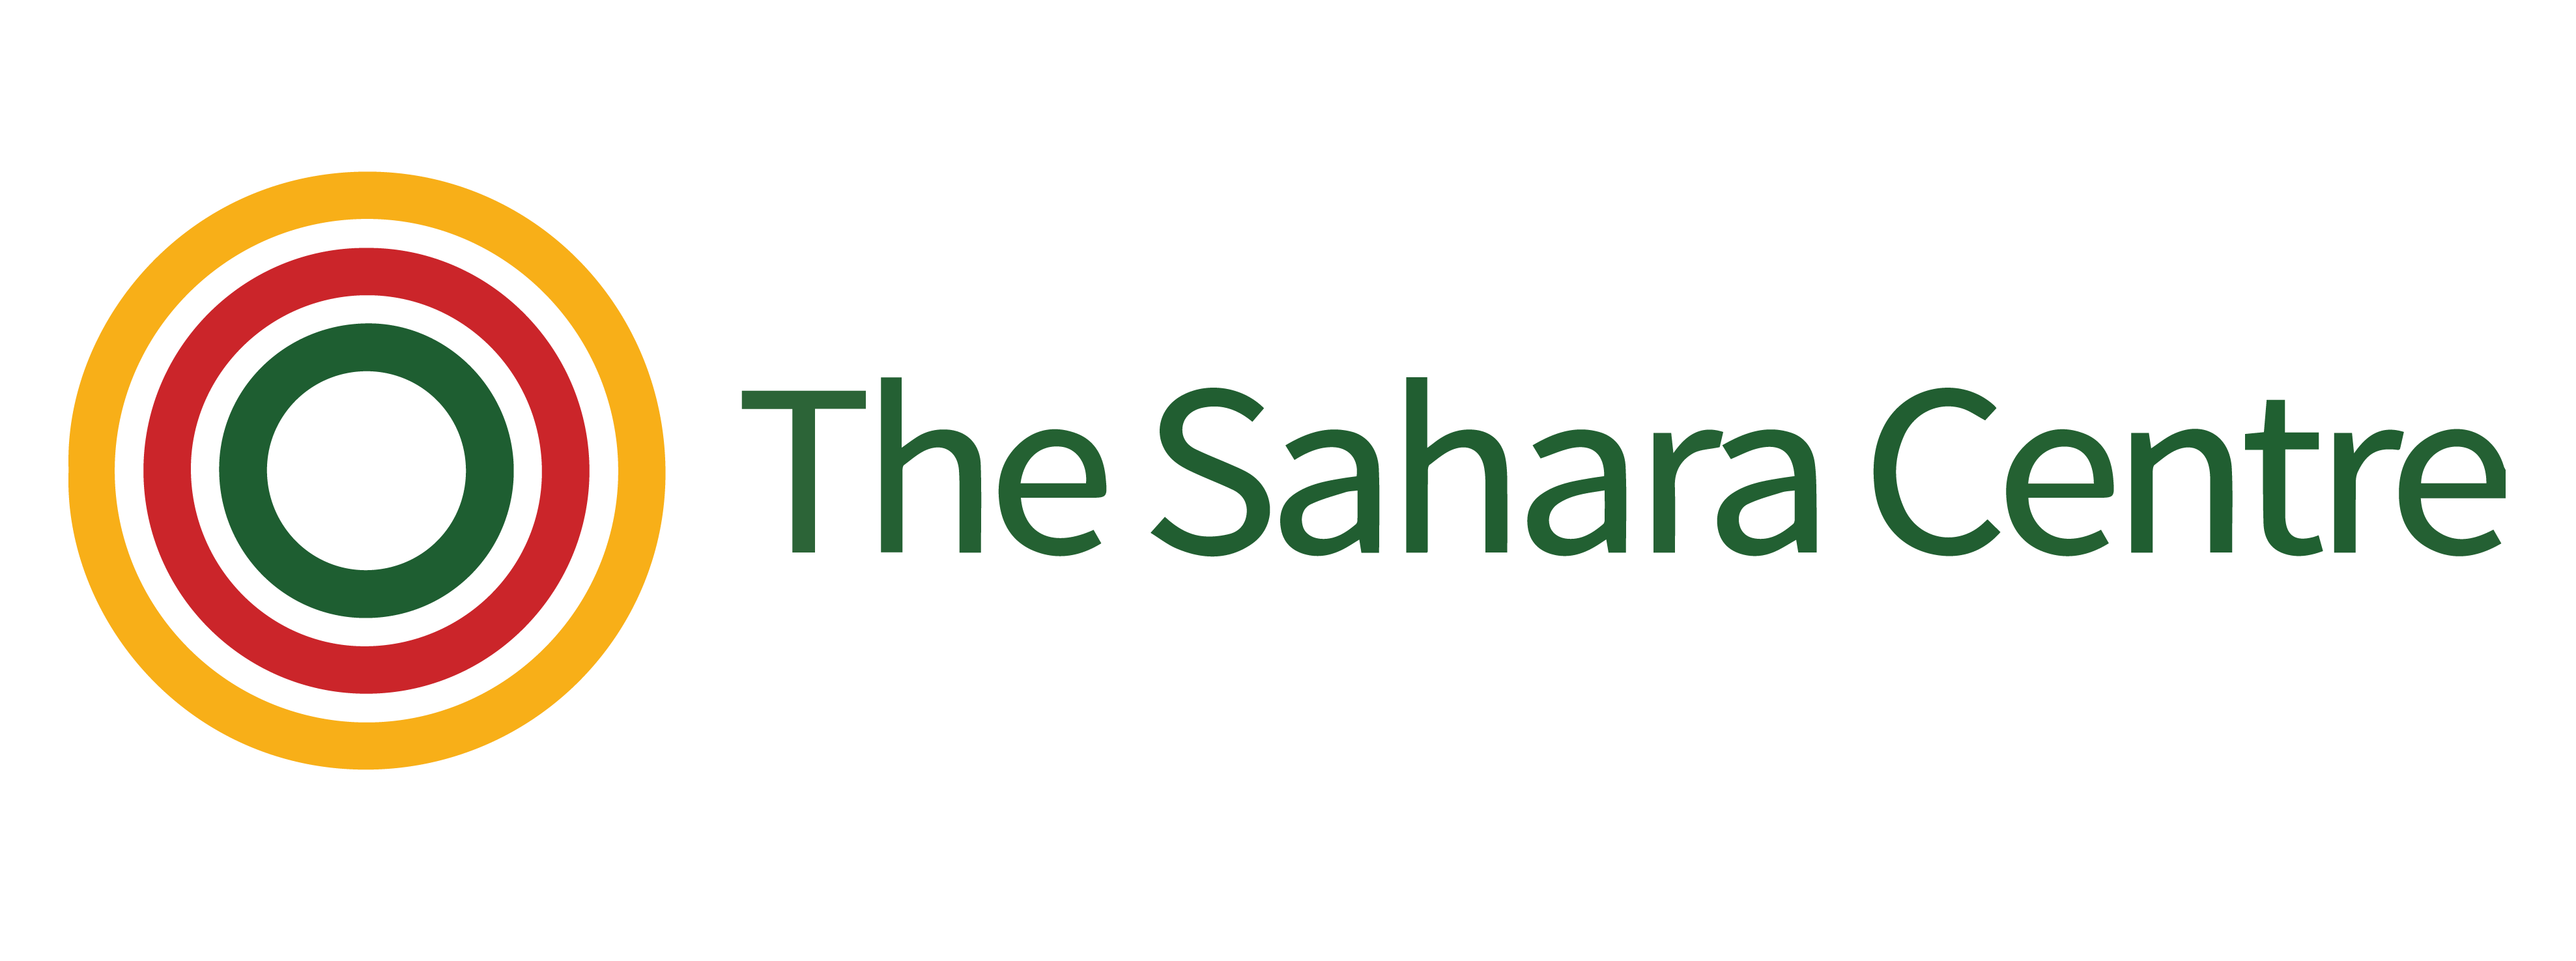 The Sahara Centre